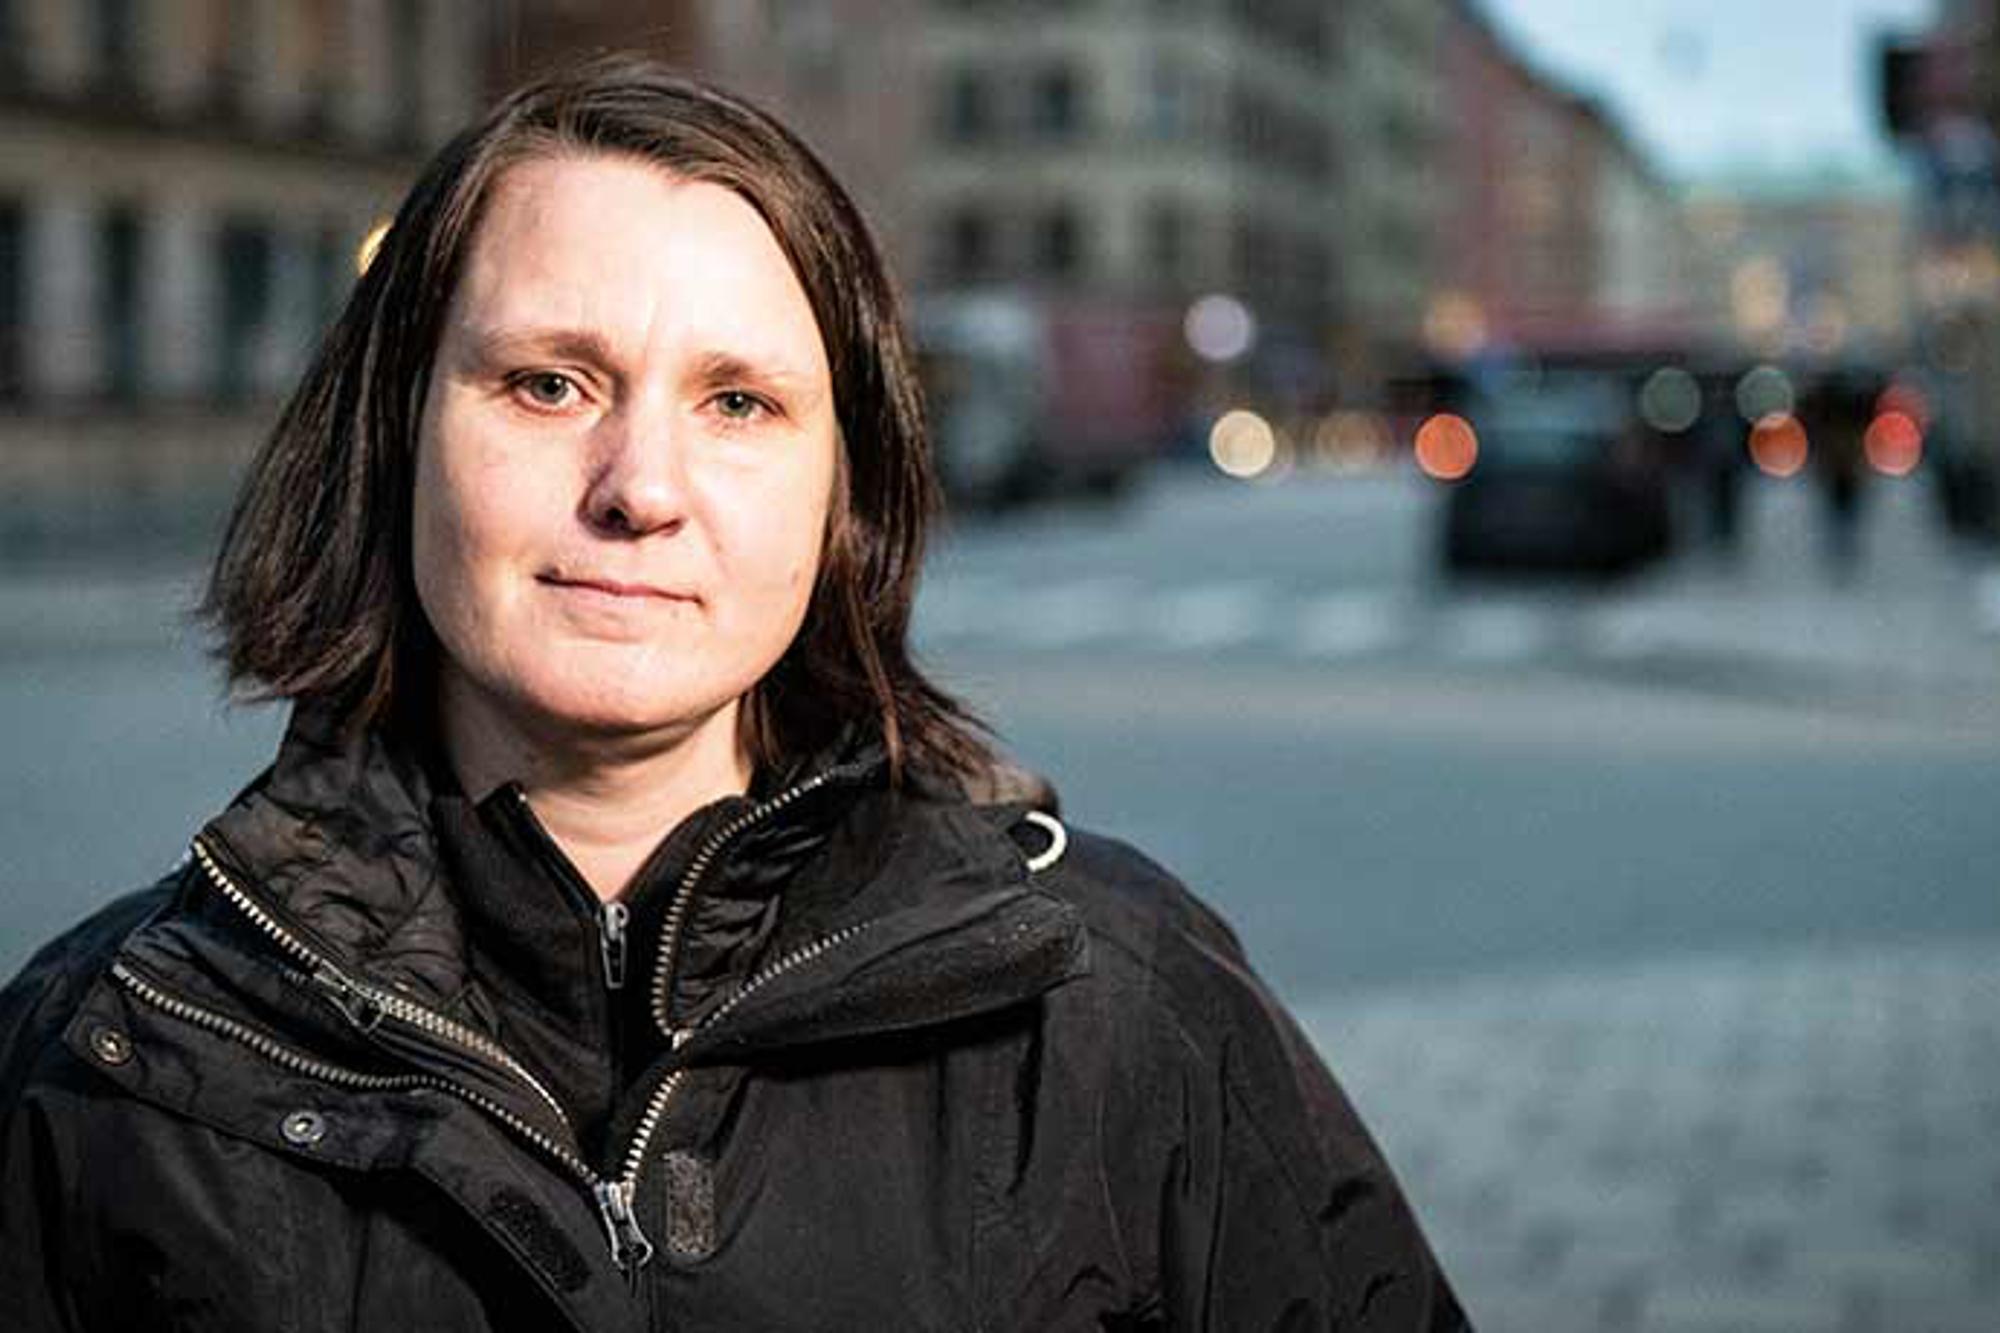 Porträttbild av Kamilla Lindstedt som tittar in i kameran. Hon står utomhus på en gatan, och i bakgrunden syns byggnader.